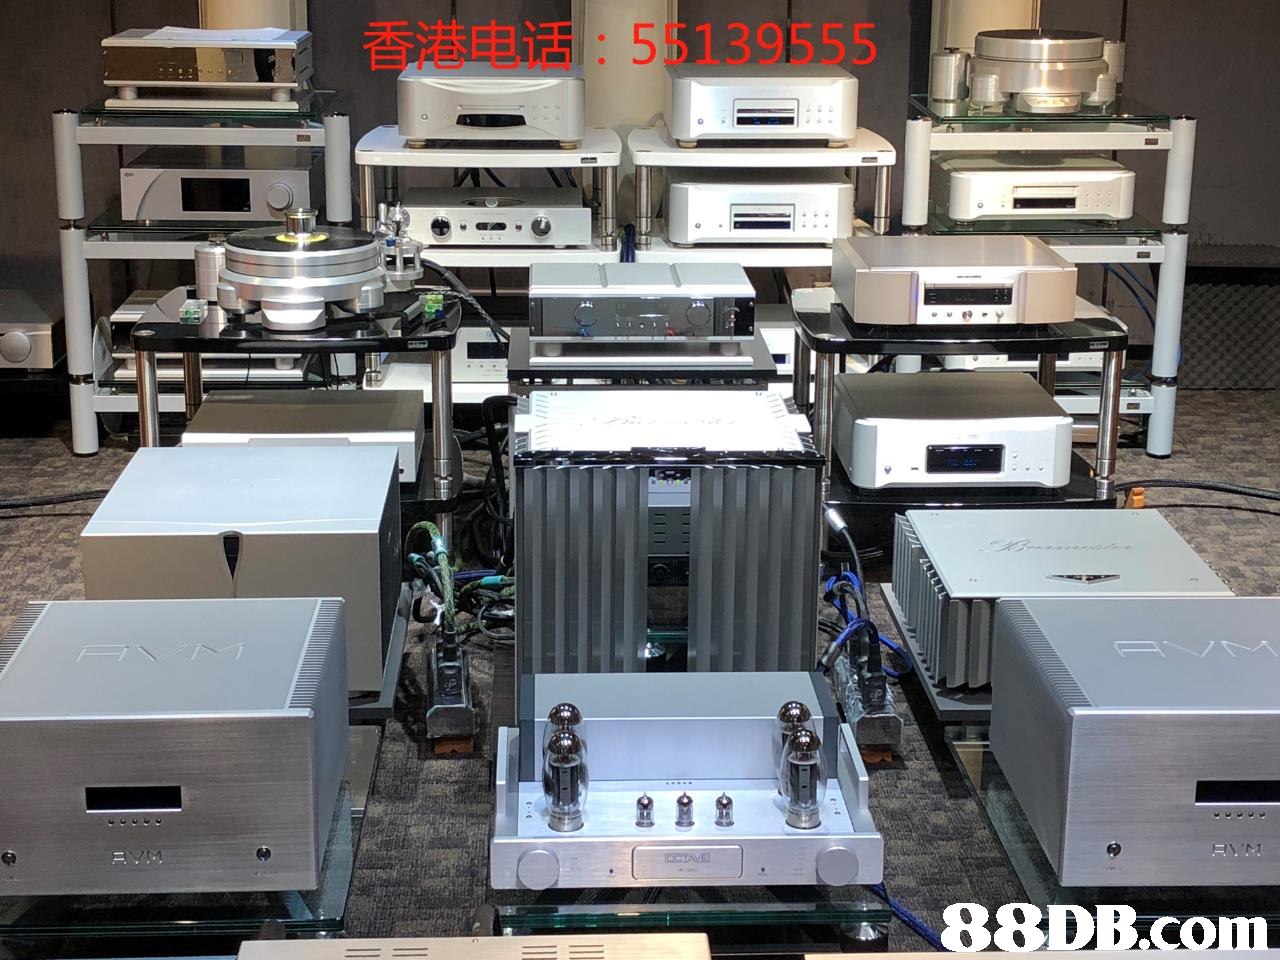 香港电话: 55139555   Electronics,Machine,Product,Technology,Printing